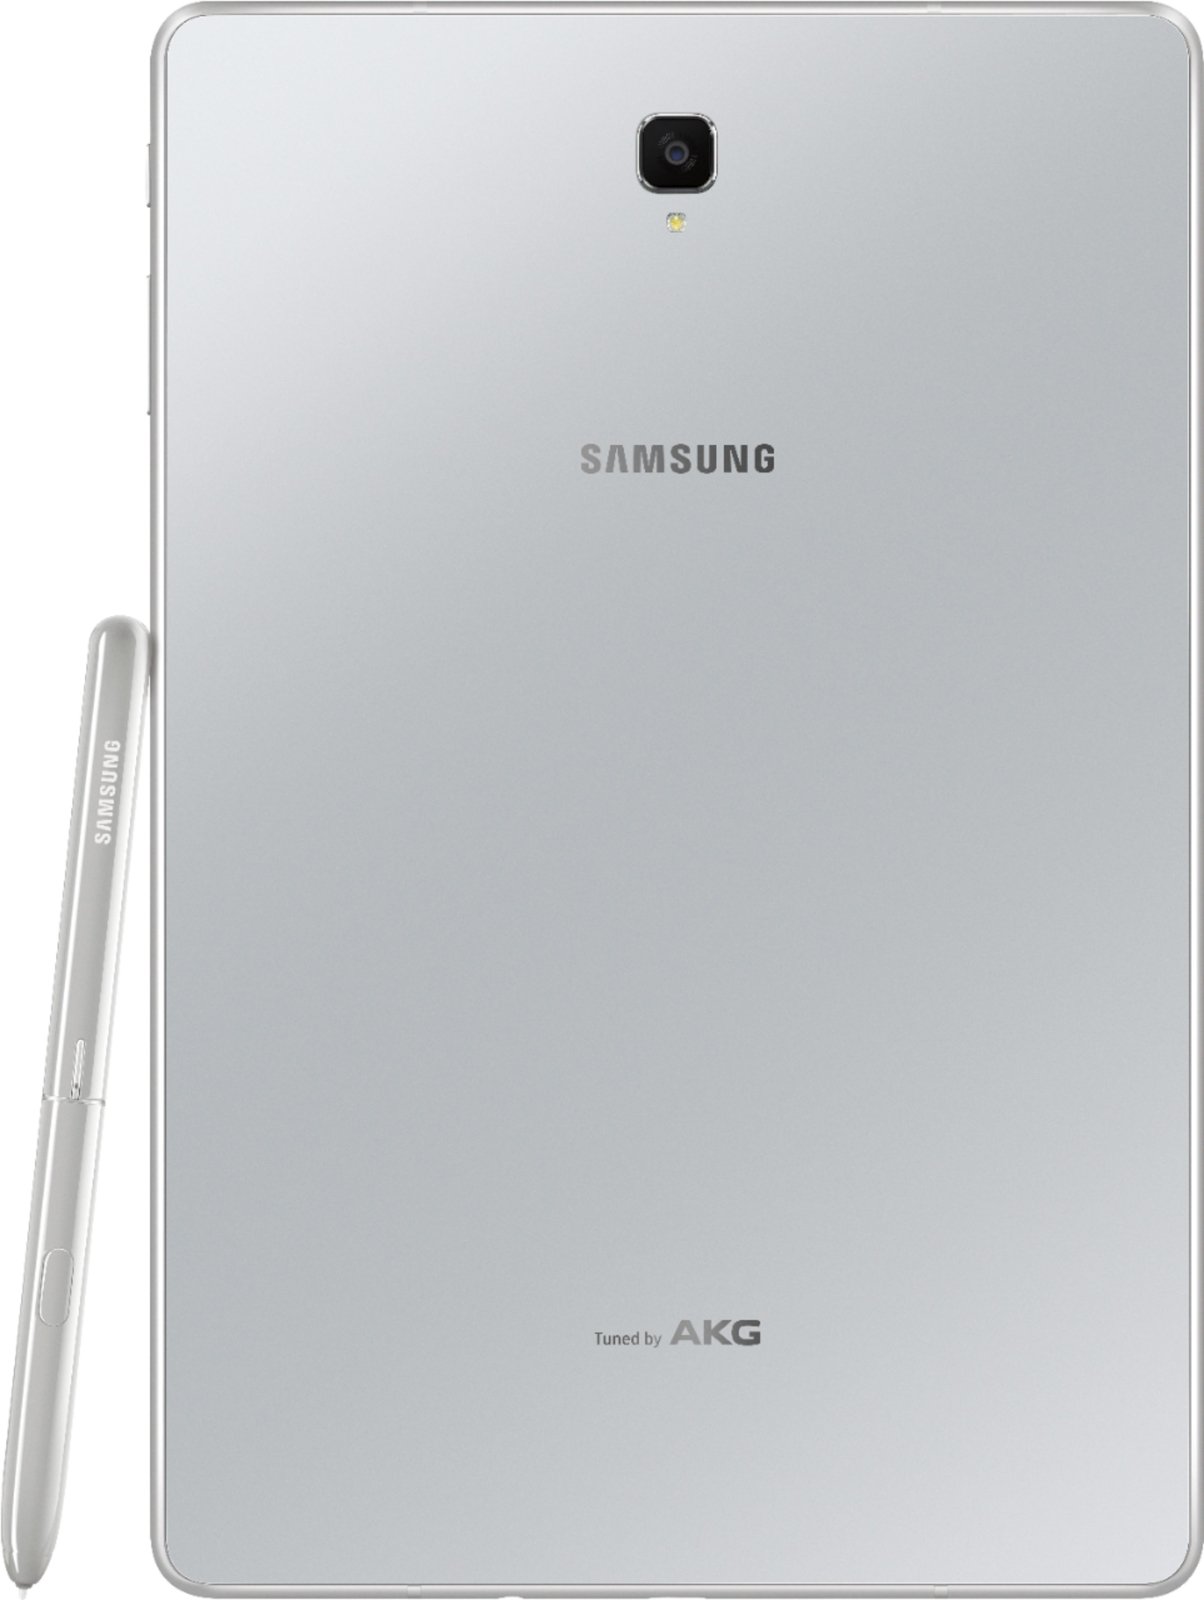 Samsung Galaxy Tab S4 e la sua nuova penna sono i protagonisti di